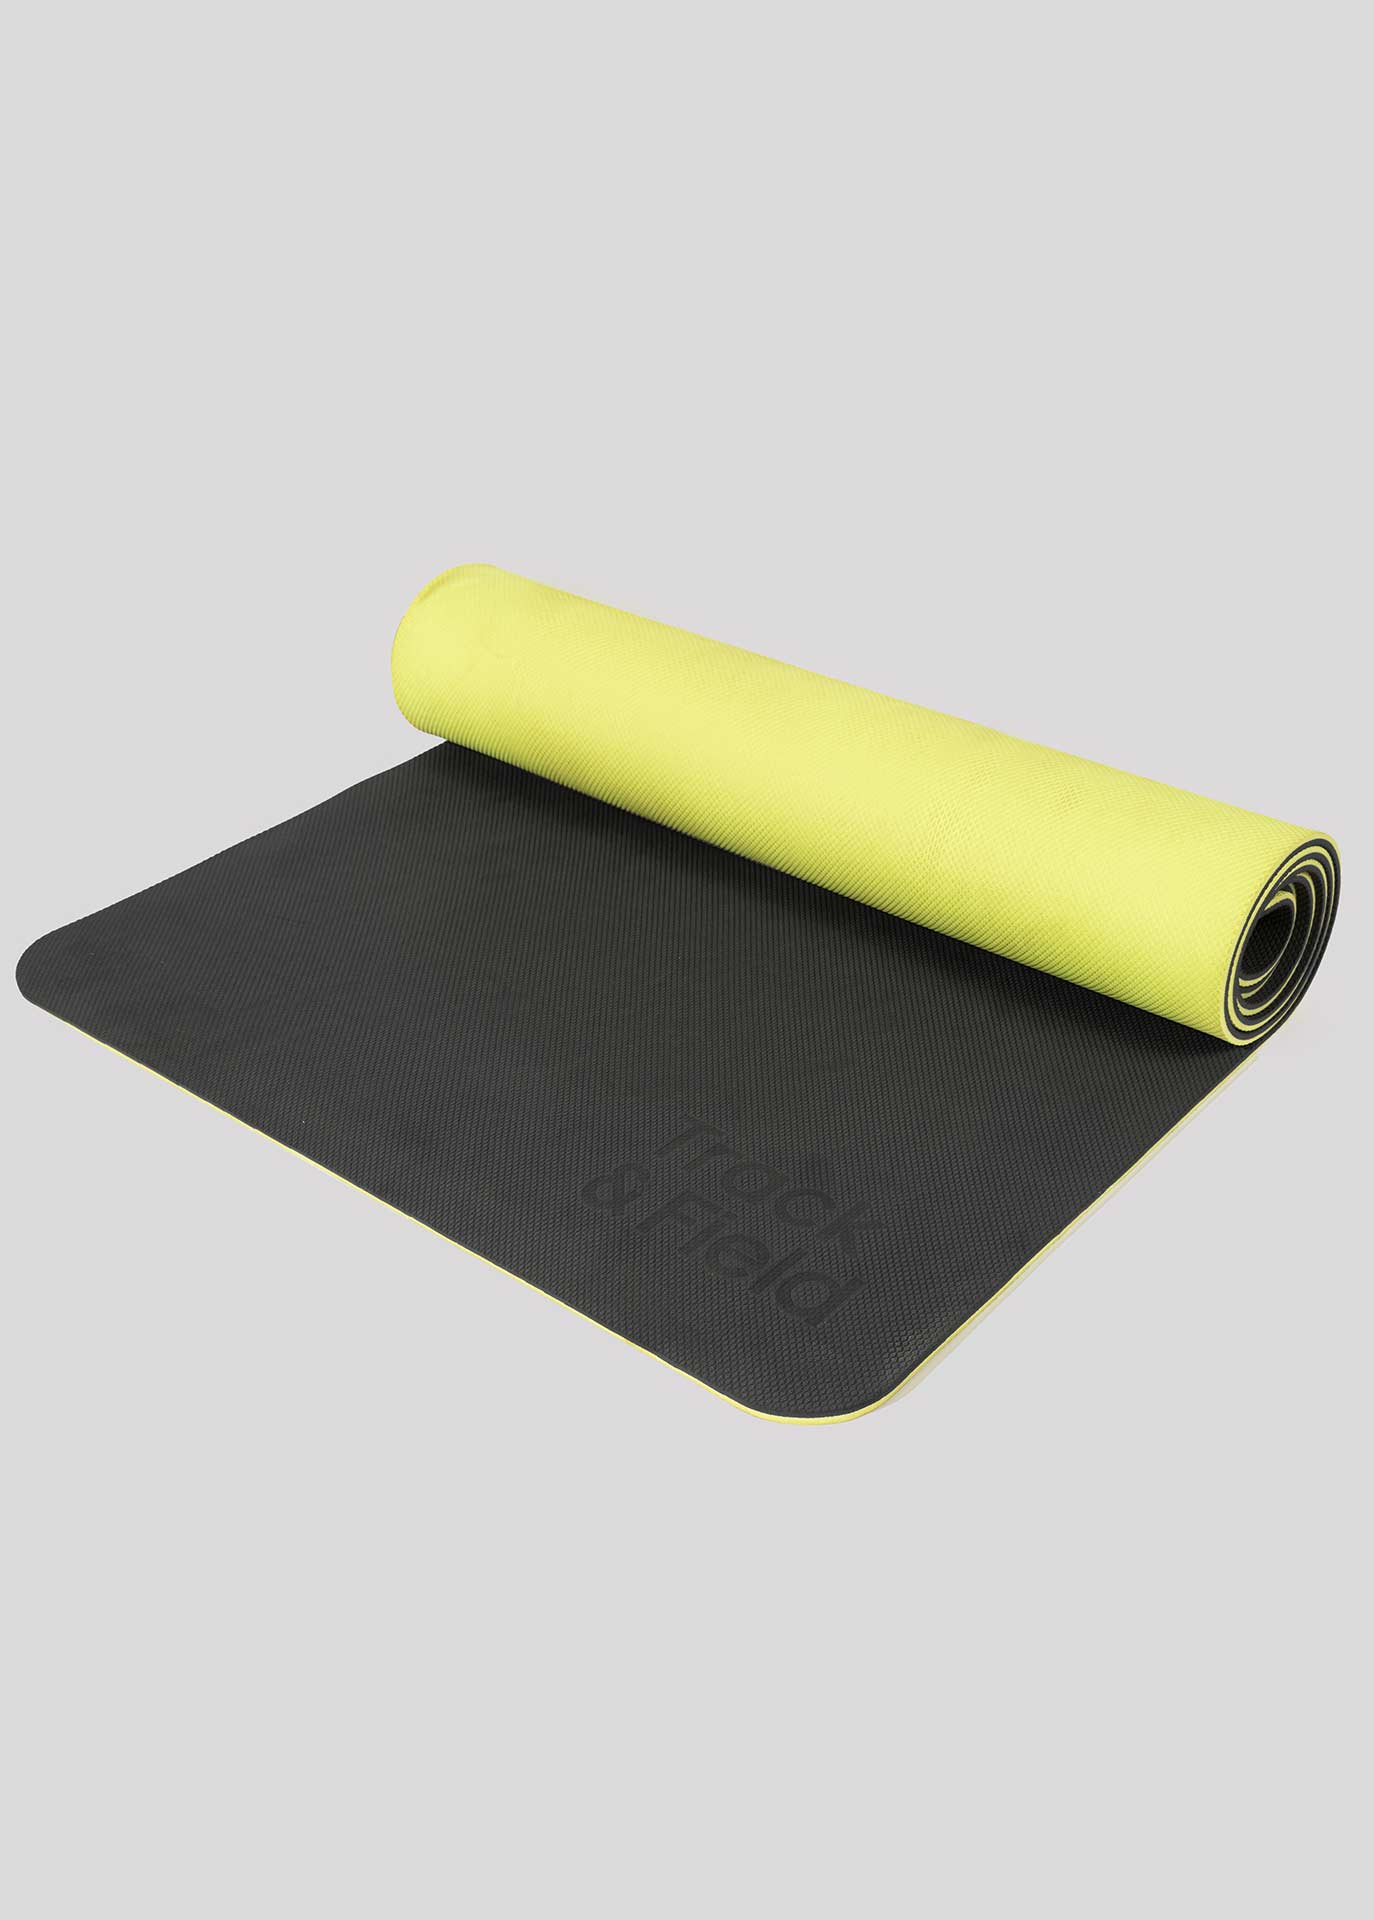 Tapete Yoga Premium Grande Cinza e amarela